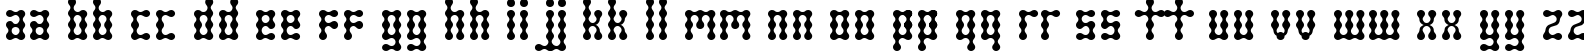 Пример написания английского алфавита шрифтом Skeletor Stance